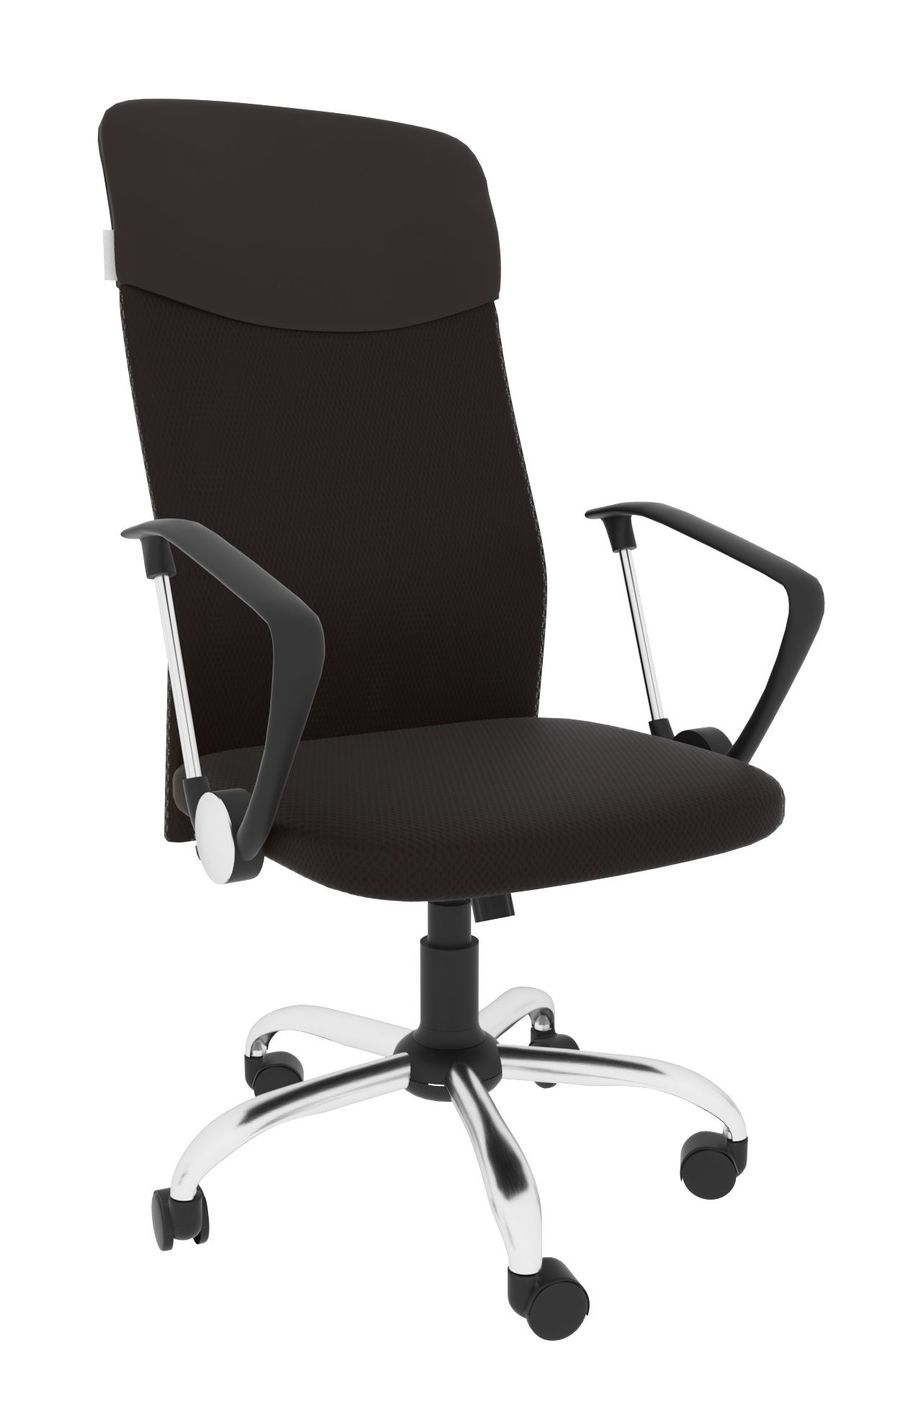 Офисное кресло Экспресс офис 17 Array Leo A топ РС900 хром Ткань сетка коричневая